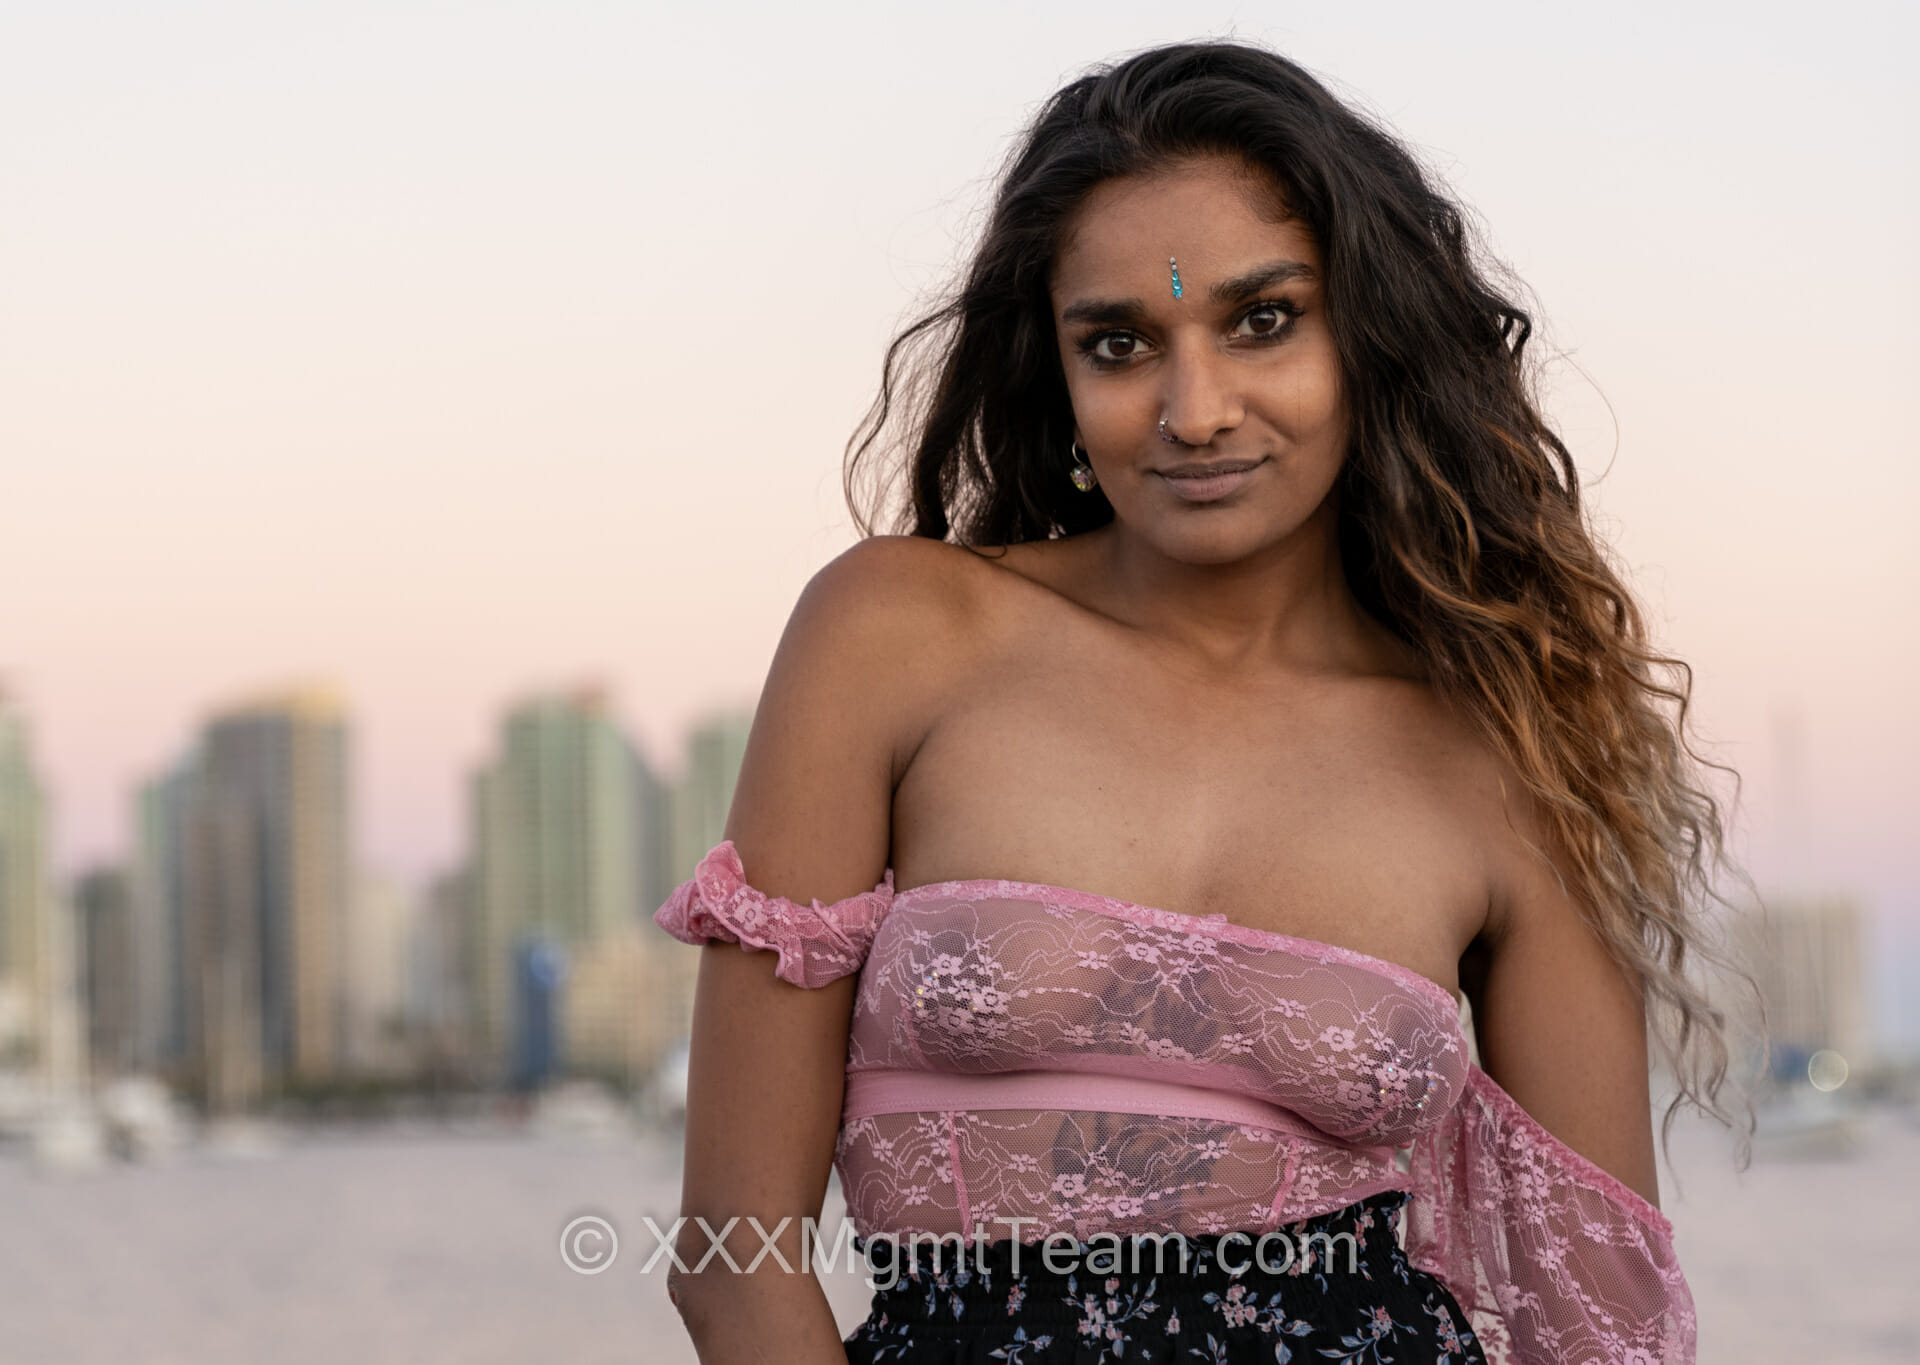 Xxxmgt - Siri Lanka â€“ Pornstar Profile Â» Become a Pornstar Â» Sri Lankan Model